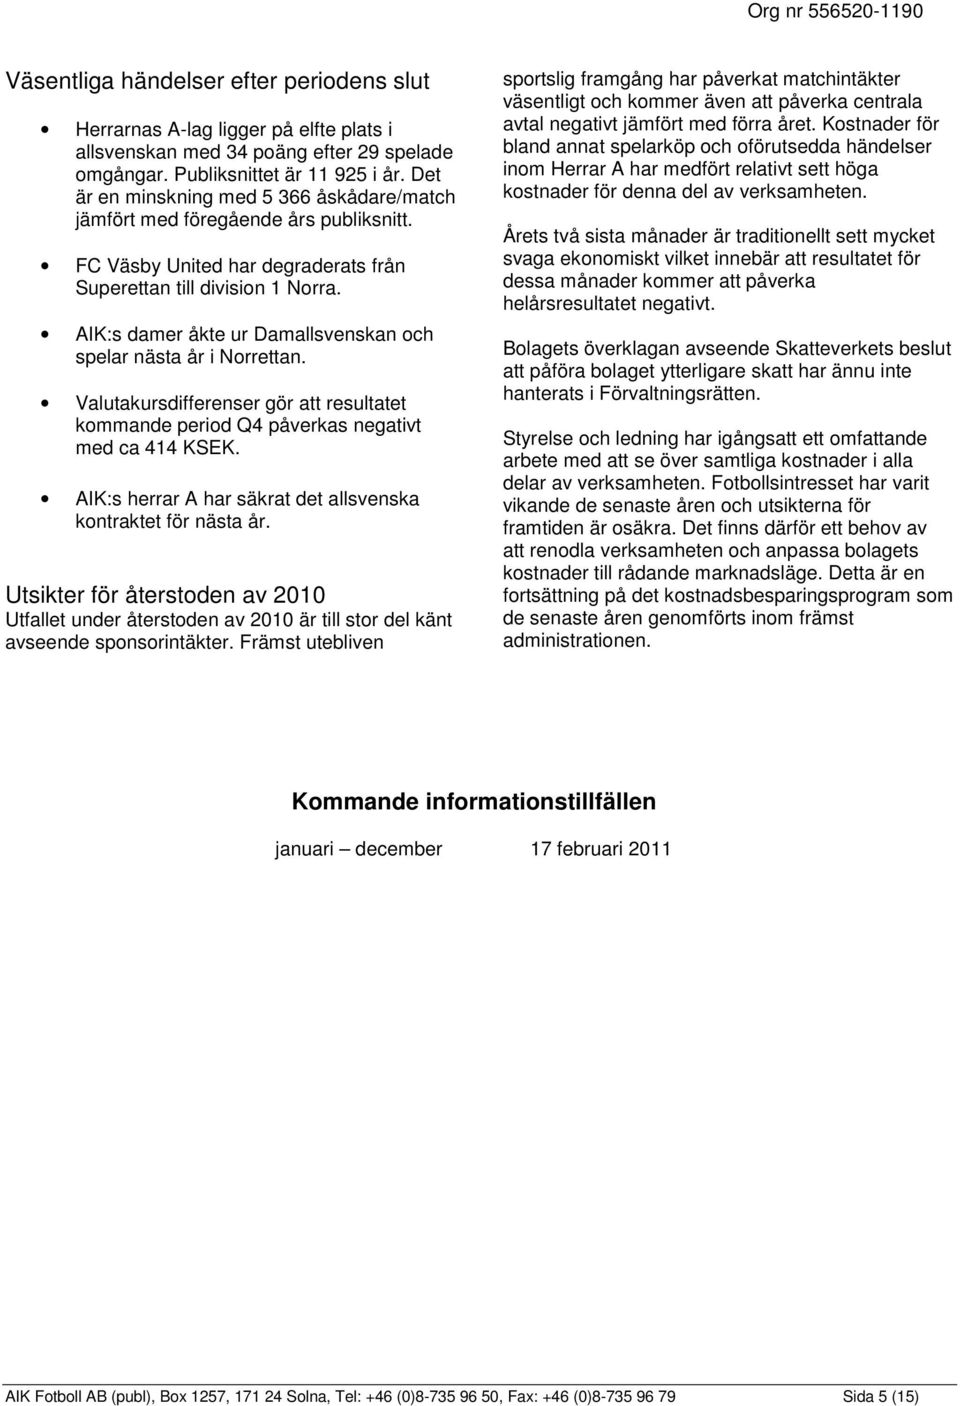 AIK:s damer åkte ur Damallsvenskan och spelar nästa år i Norrettan. Valutakursdifferenser gör att resultatet kommande period Q4 påverkas negativt med ca 414 KSEK.